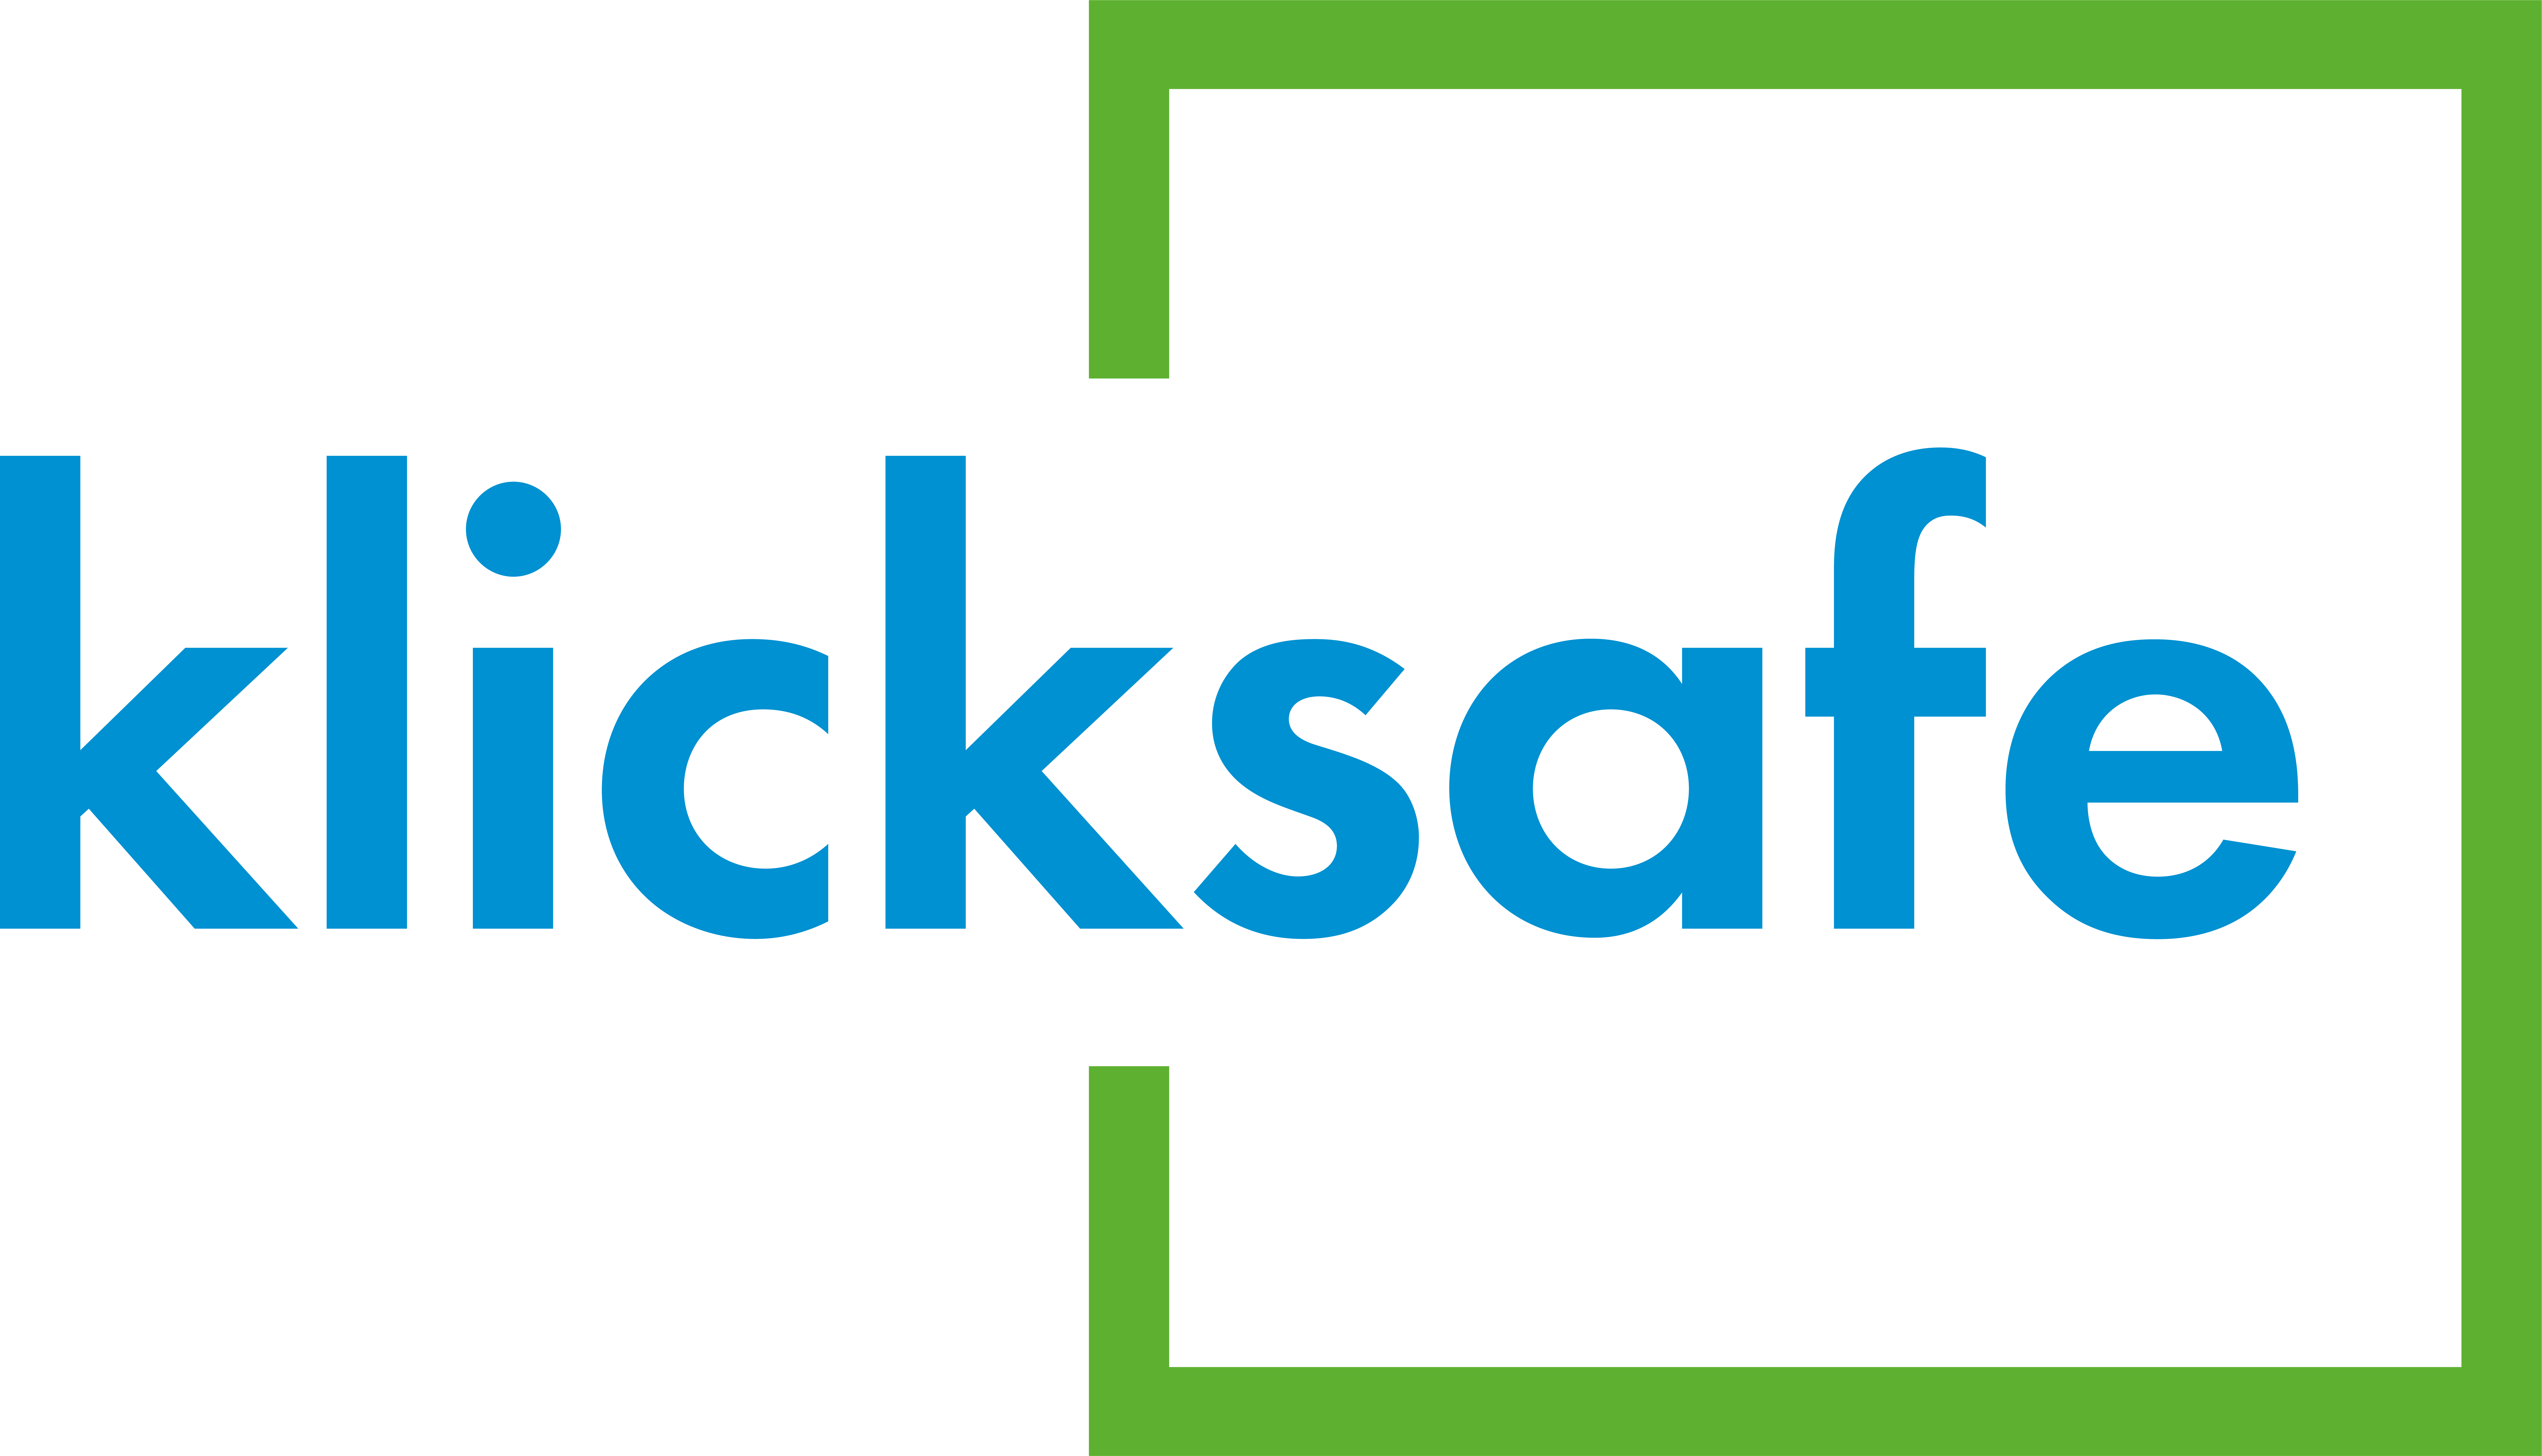 Kontaktaufnahme für sexuelle Gewalt klicksafe Logo no Claim